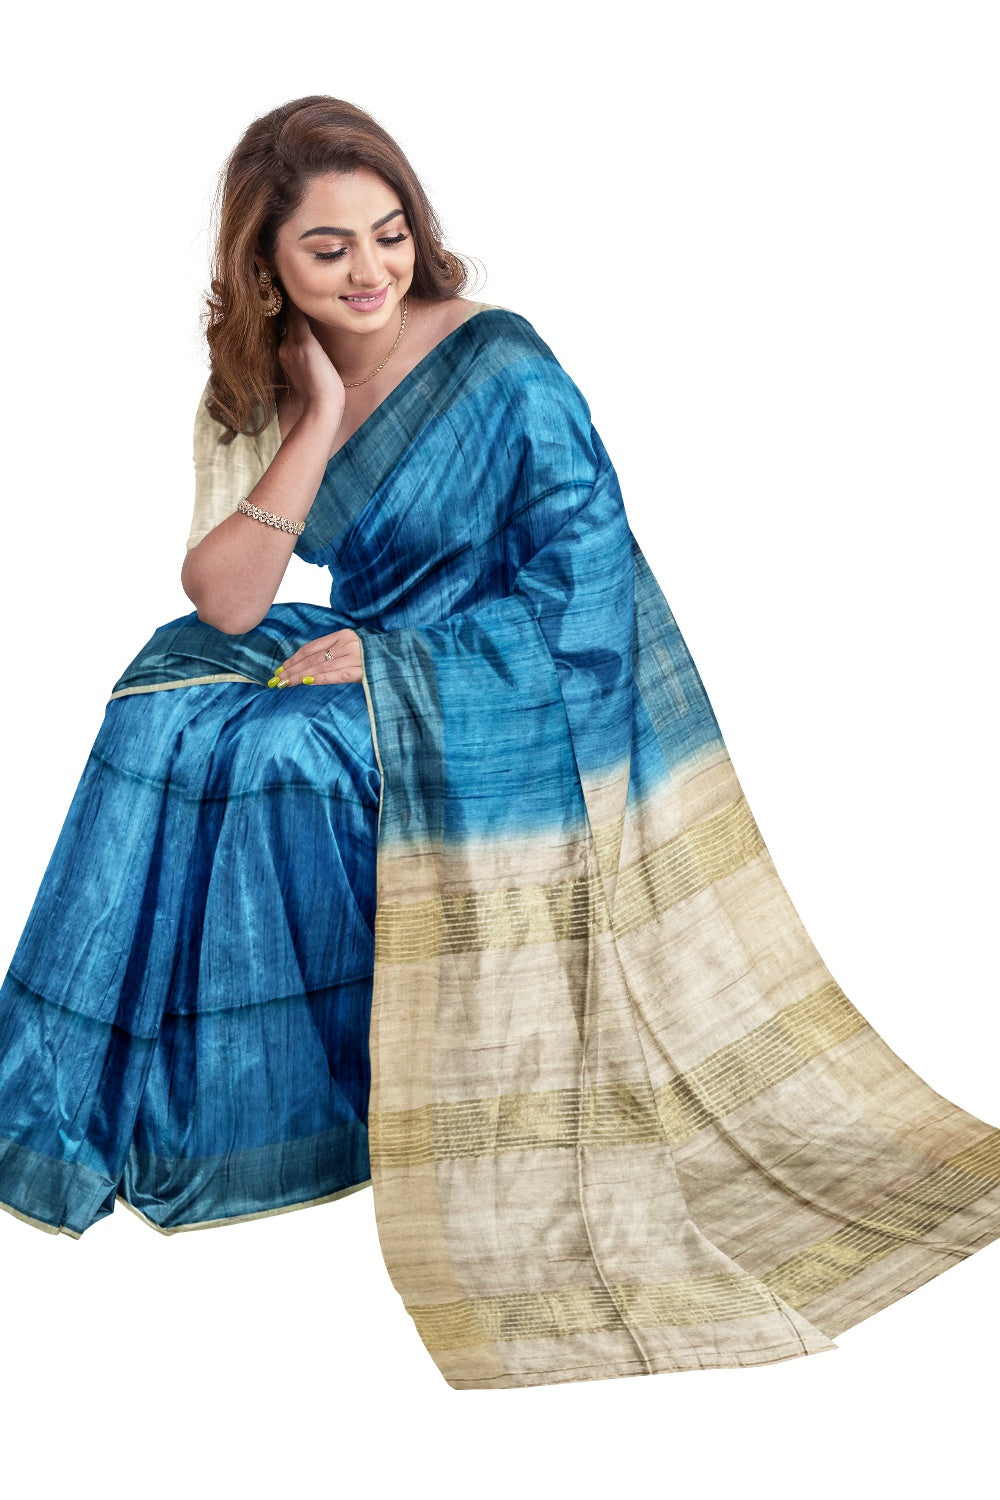 Southloom Tussar Thread Work Blue Designer Saree with Beige Pallu